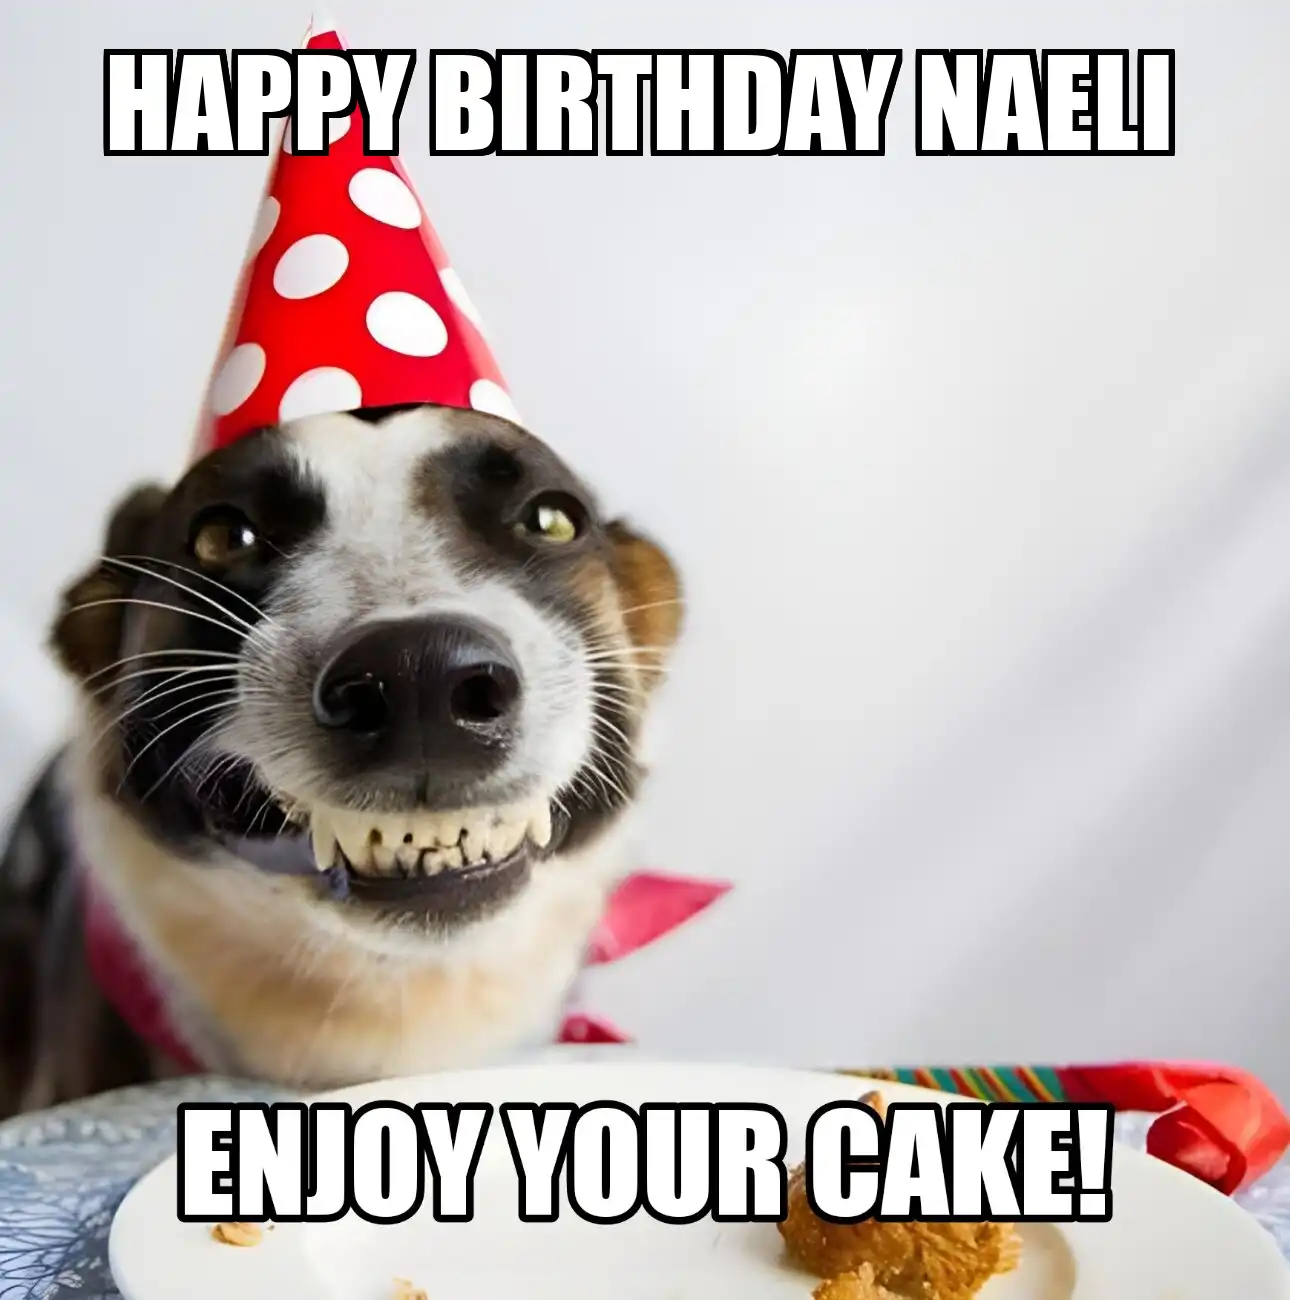 Happy Birthday Naeli Enjoy Your Cake Dog Meme